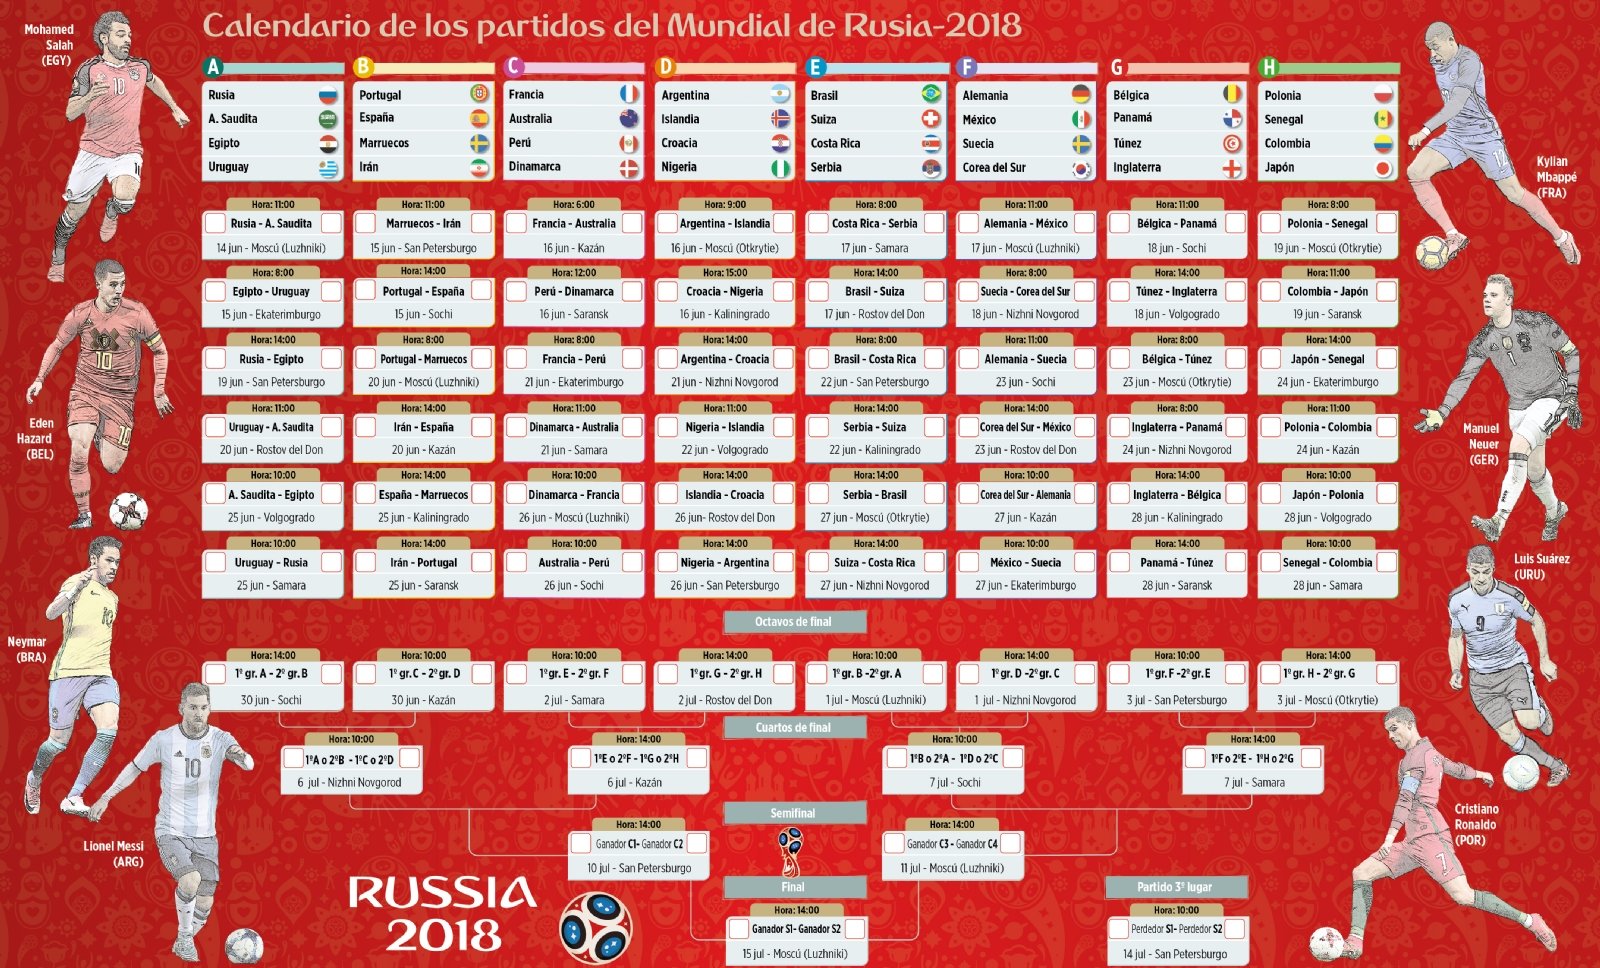 20 calendarios del Mundial de Fútbol 2018 para descargar e